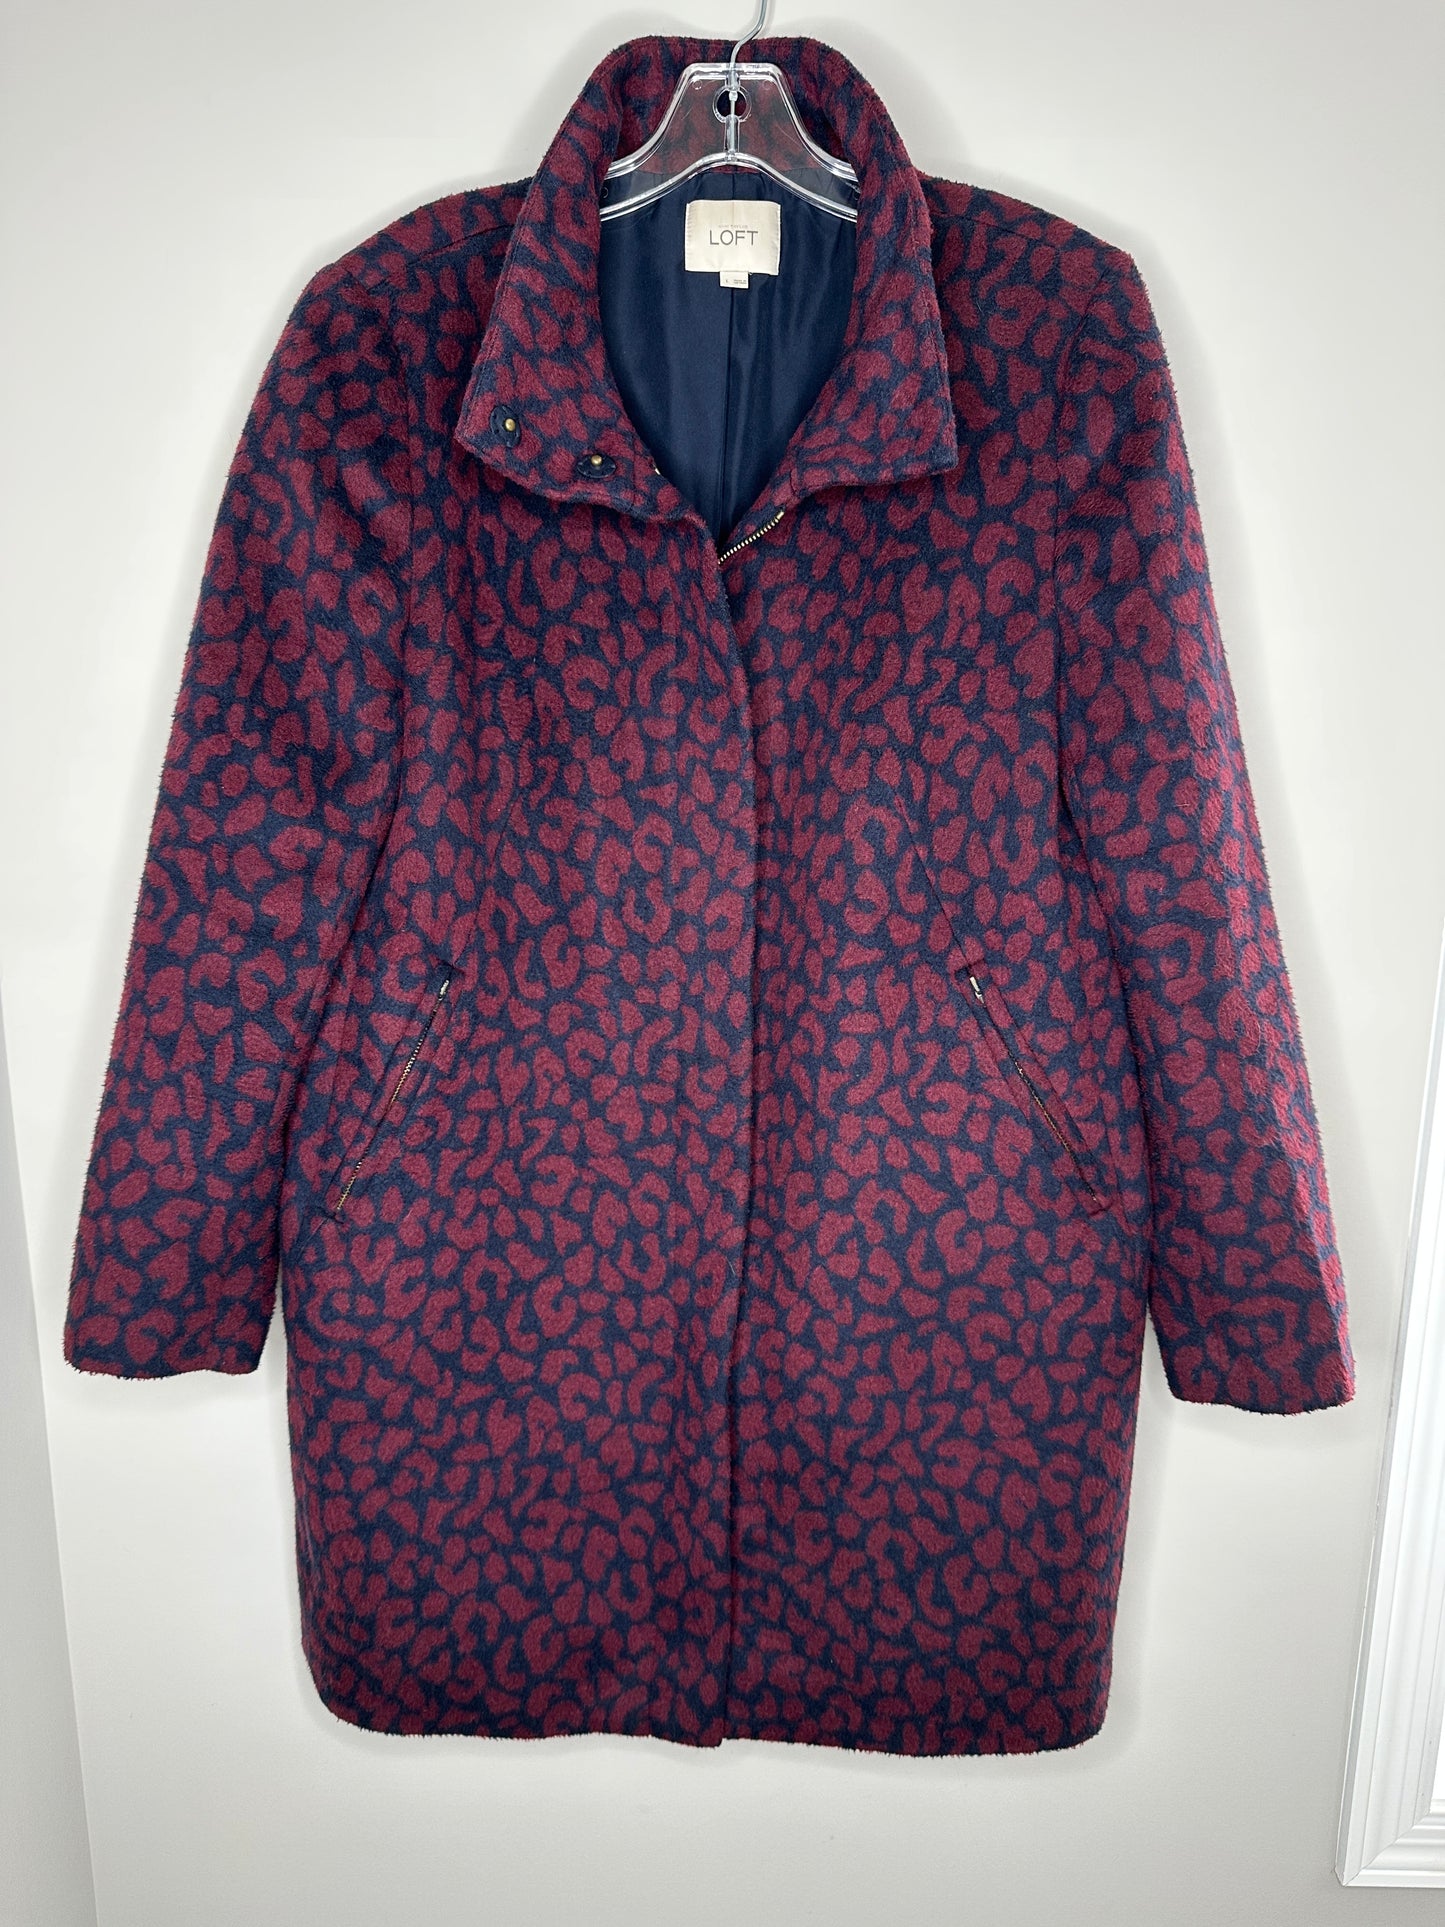 Ann Taylor LOFT Size L Navy Blue & Cranberry Cocoon-Style Coat